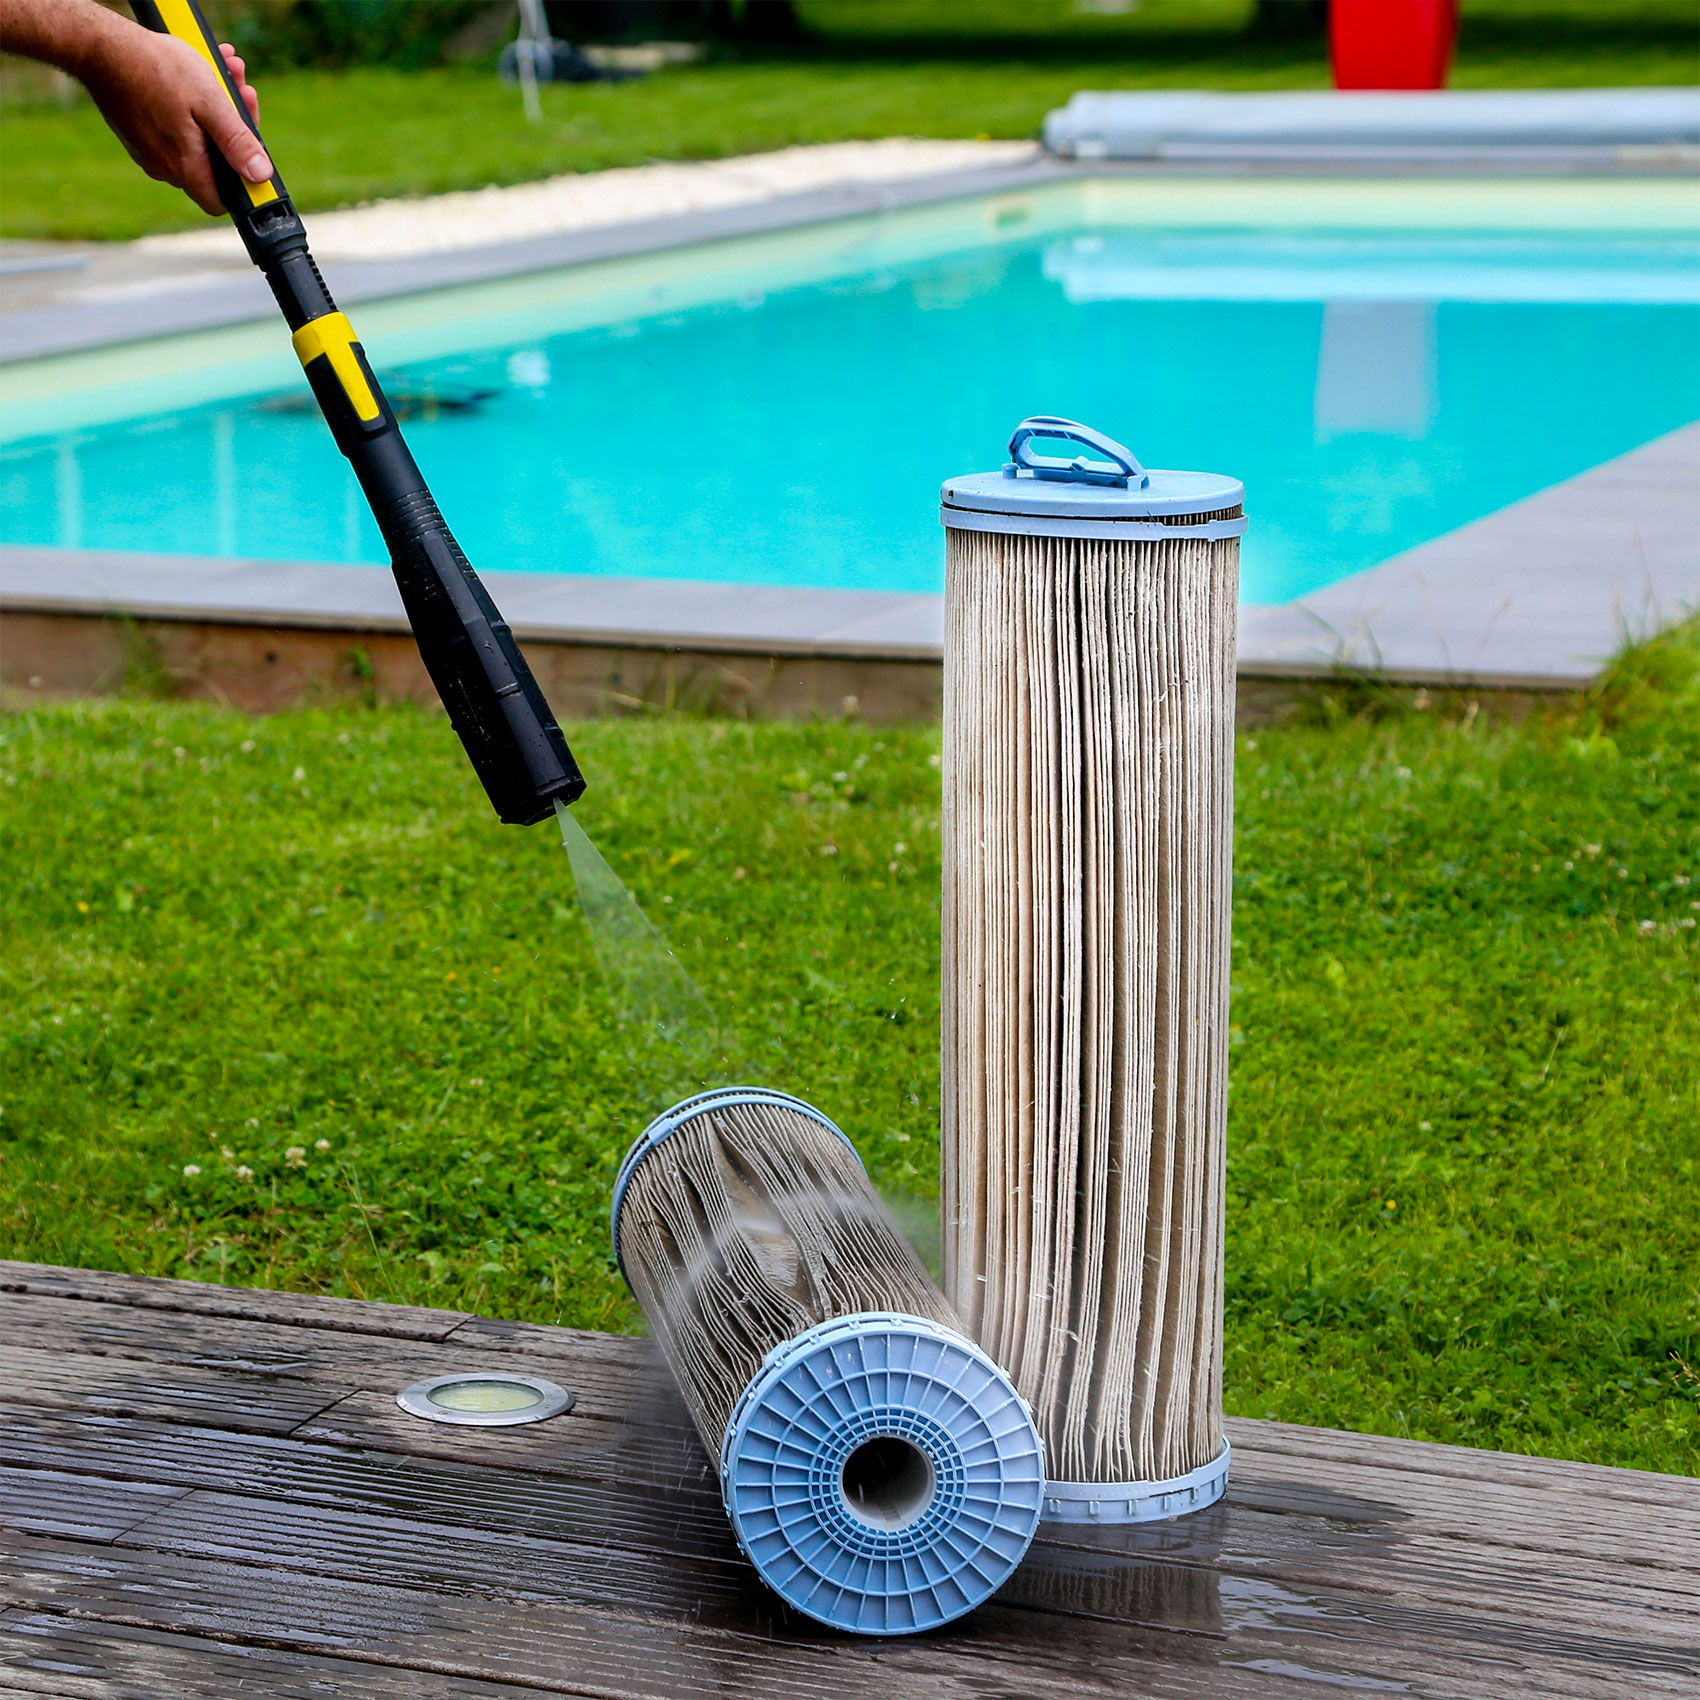 Nettoyage d'un filtre de piscine avec un nettoyeur haute pression sur une terrasse en bois, avec une piscine en arrière-plan.